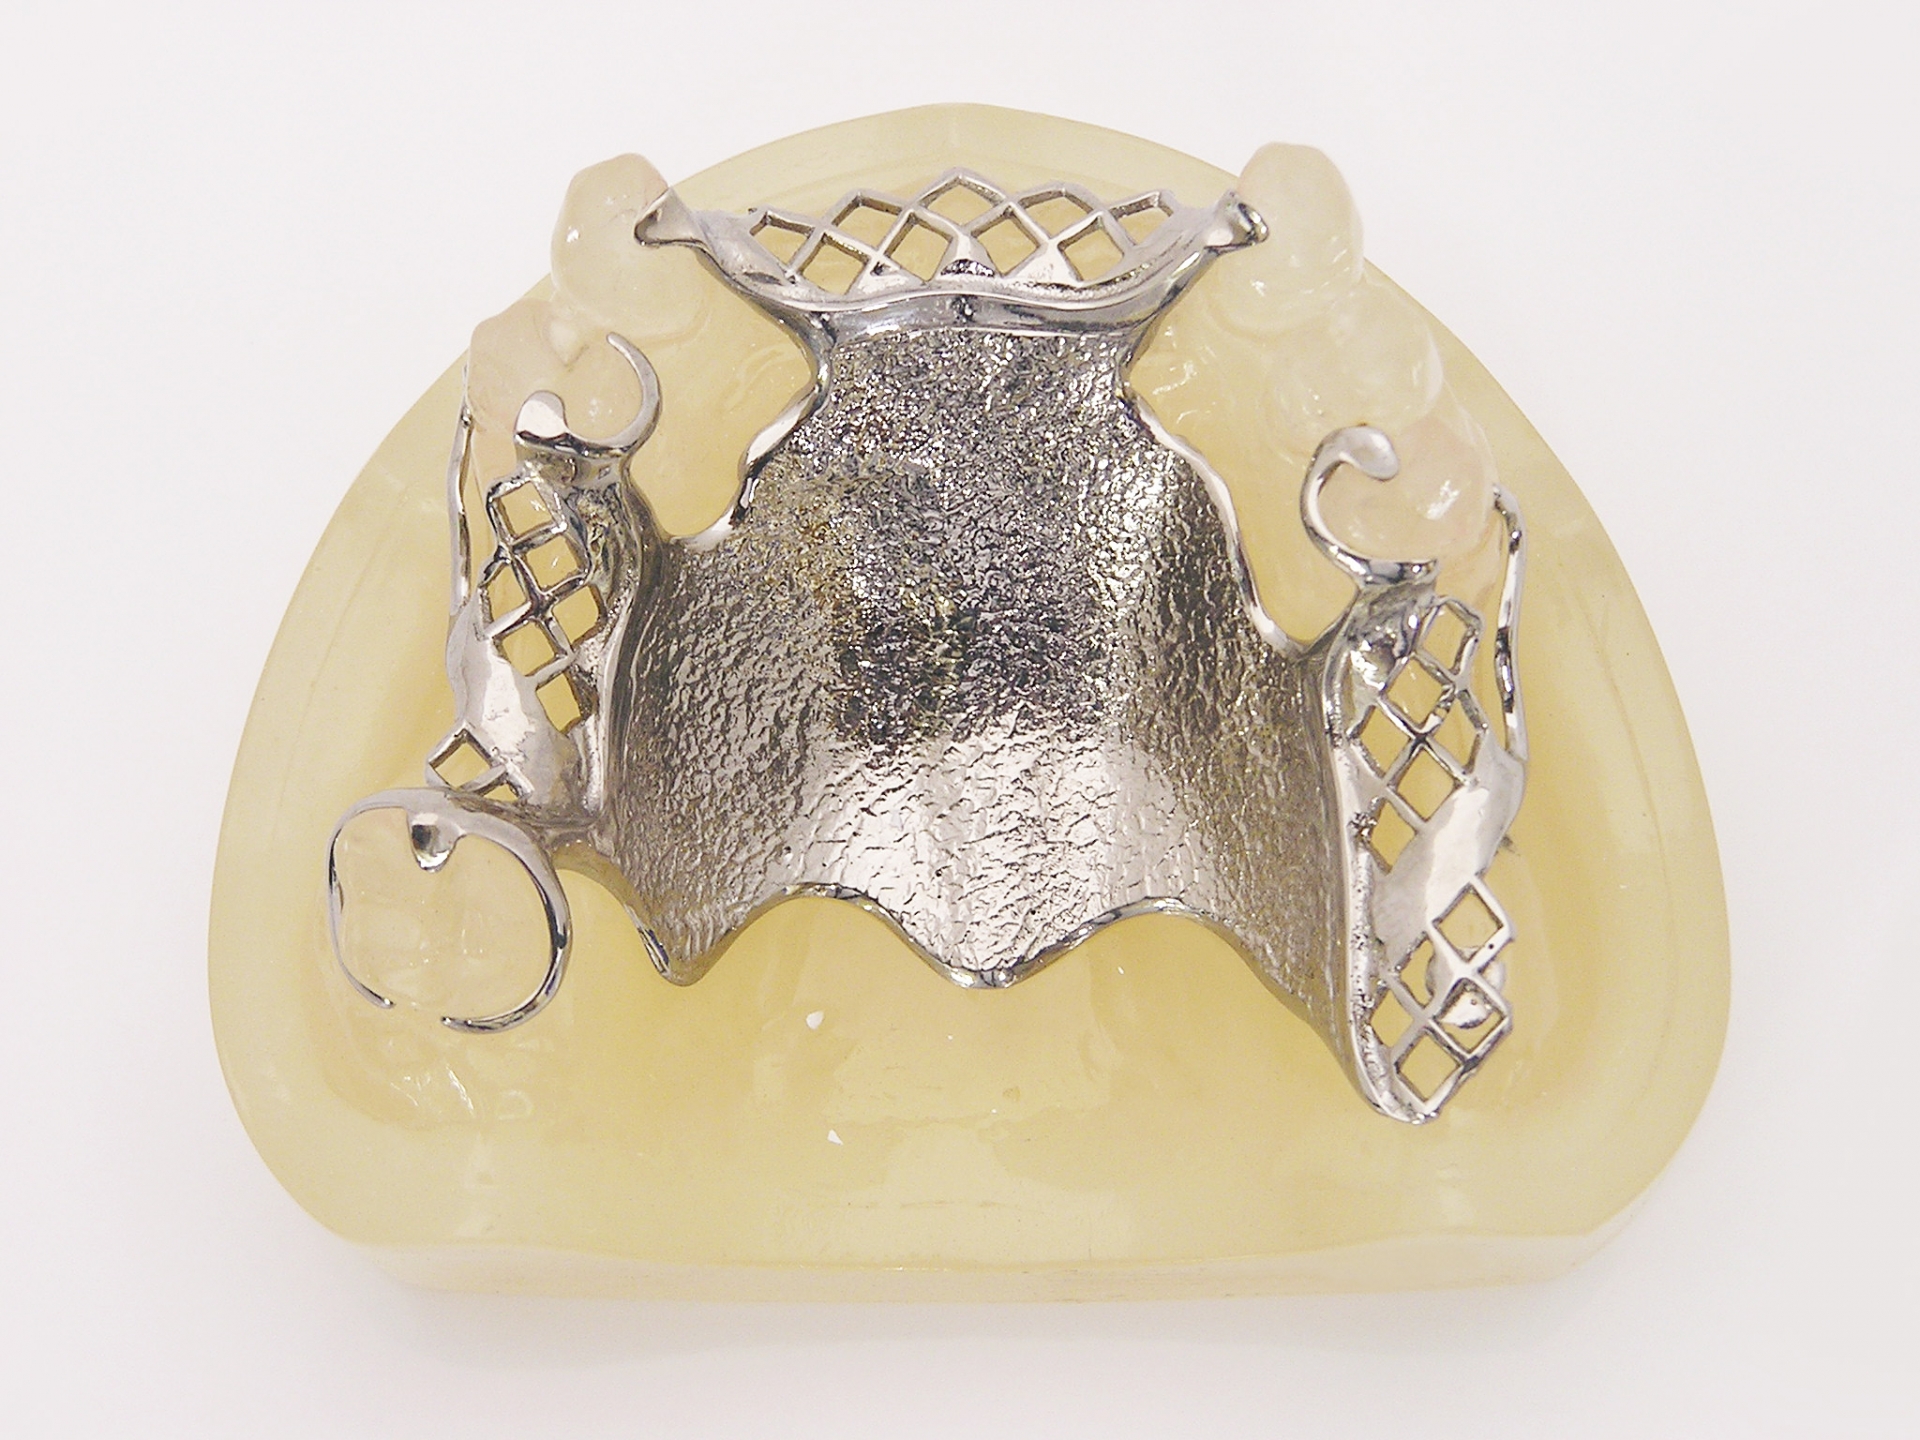 金属床義歯の特徴やメリットについて